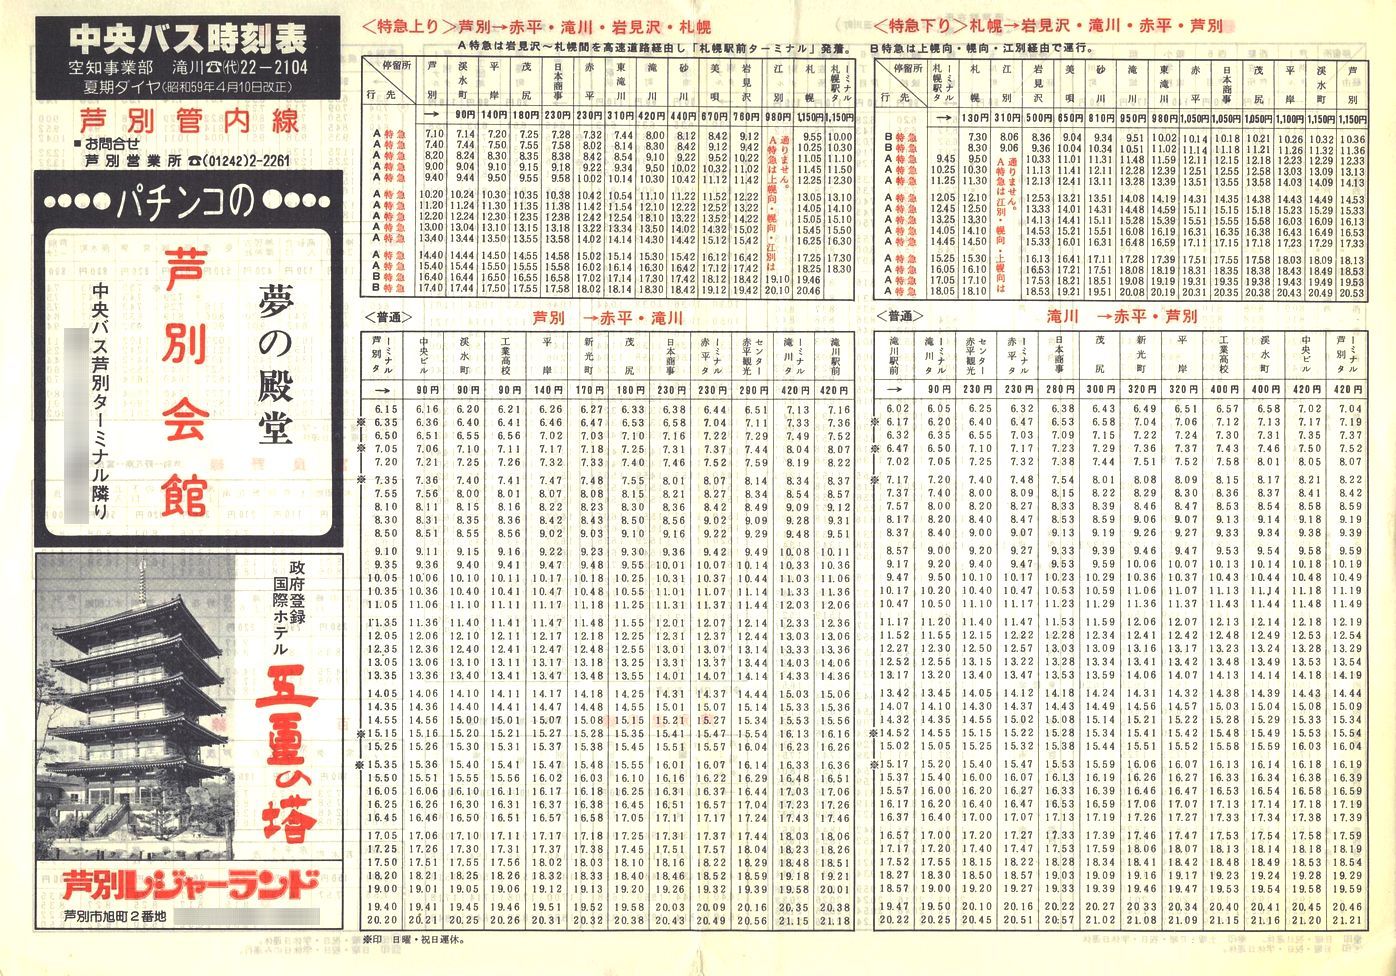 1984-04-10改正_北海道中央バス(空知)_芦別管内線時刻表表面